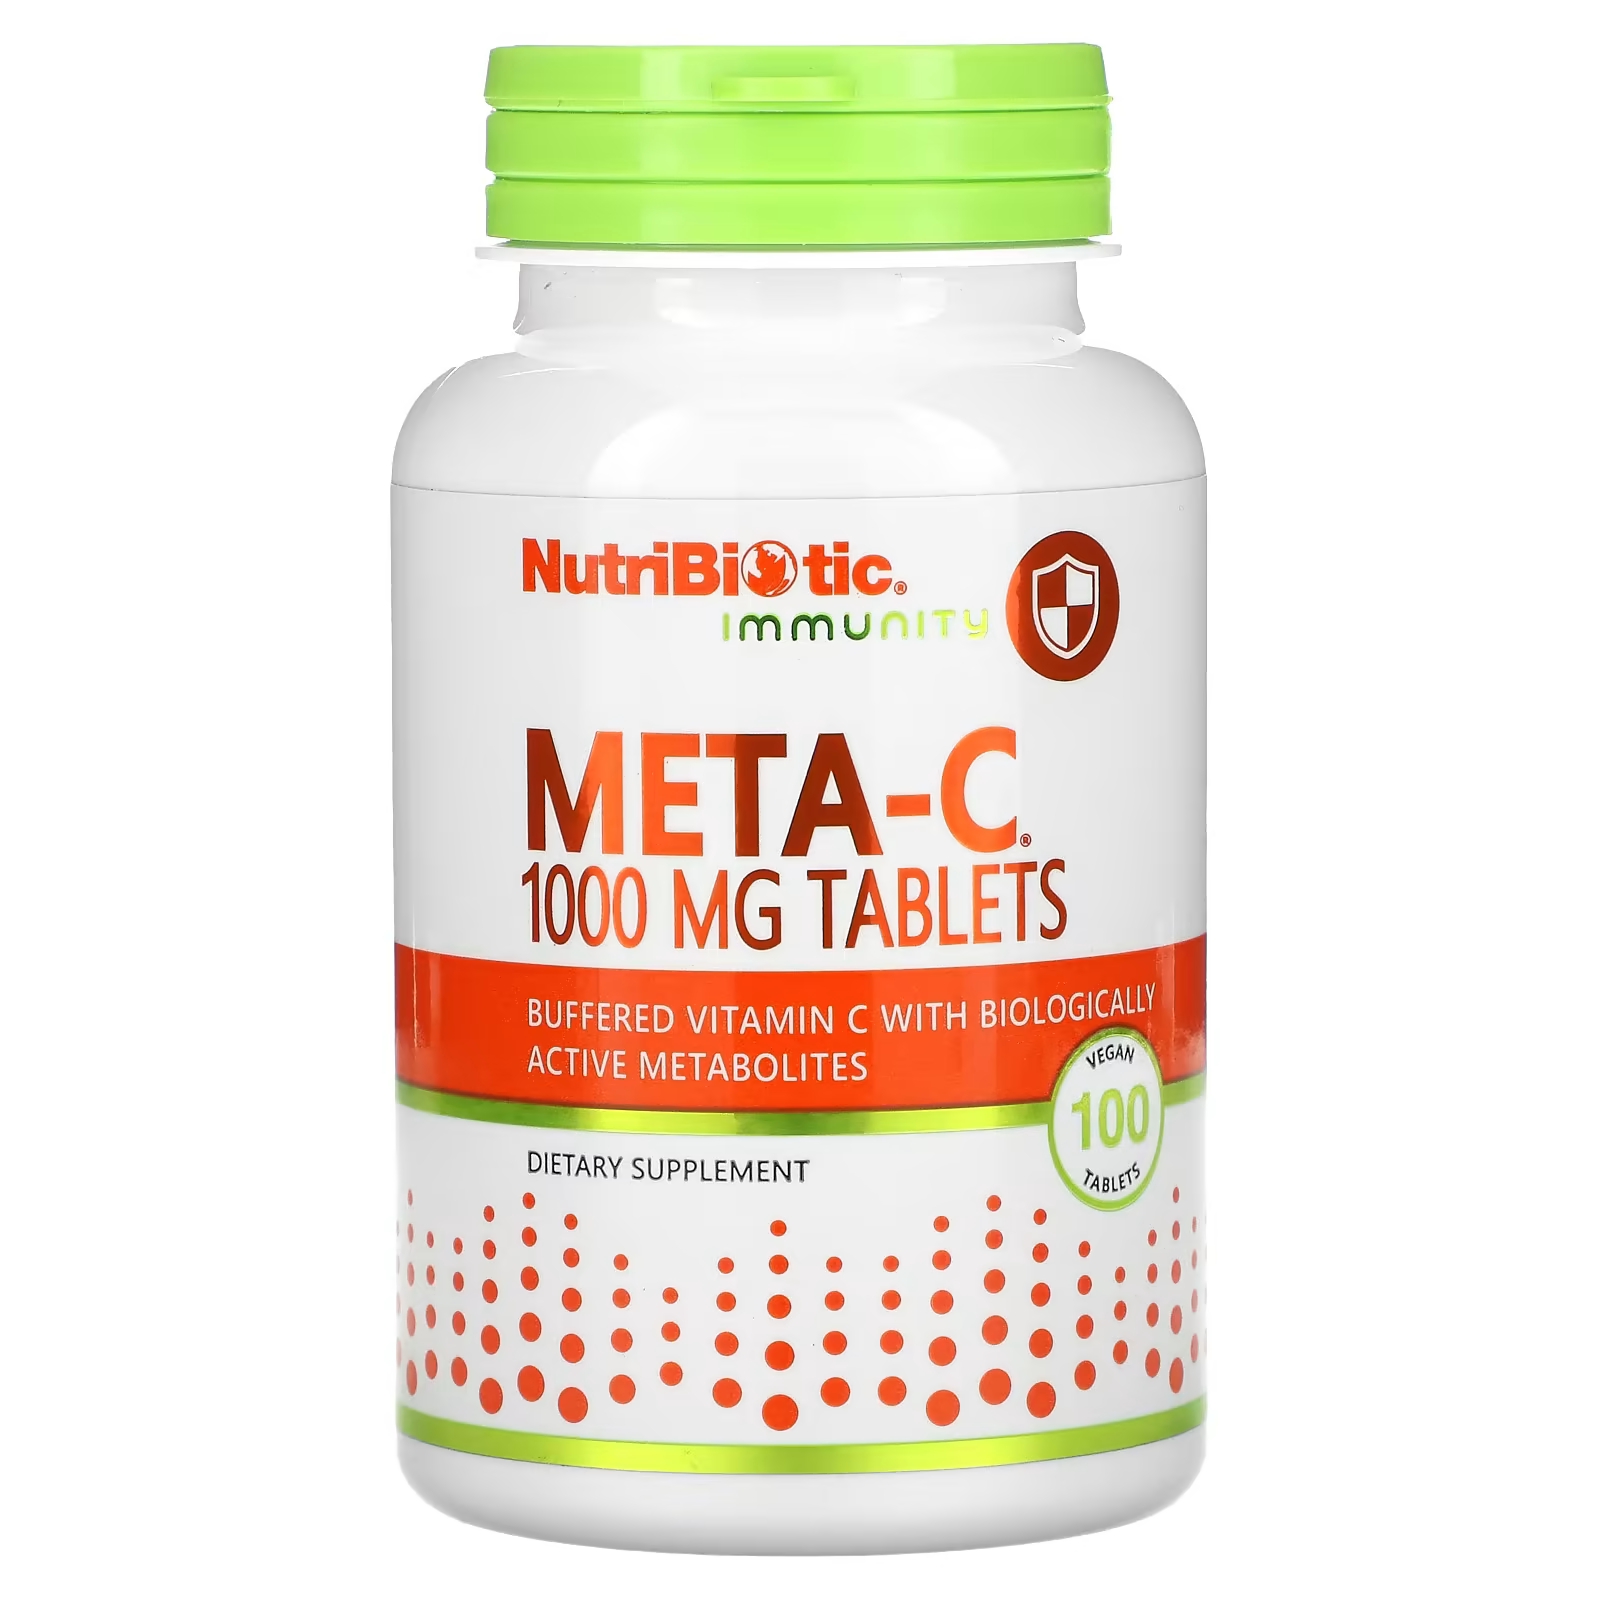 Пищевая добавка NutriBiotic Immunity Meta-C 1000 мг, 100 веганских таблеток nutribiotic immunity витамин c 1000 мг 250 веганских таблеток